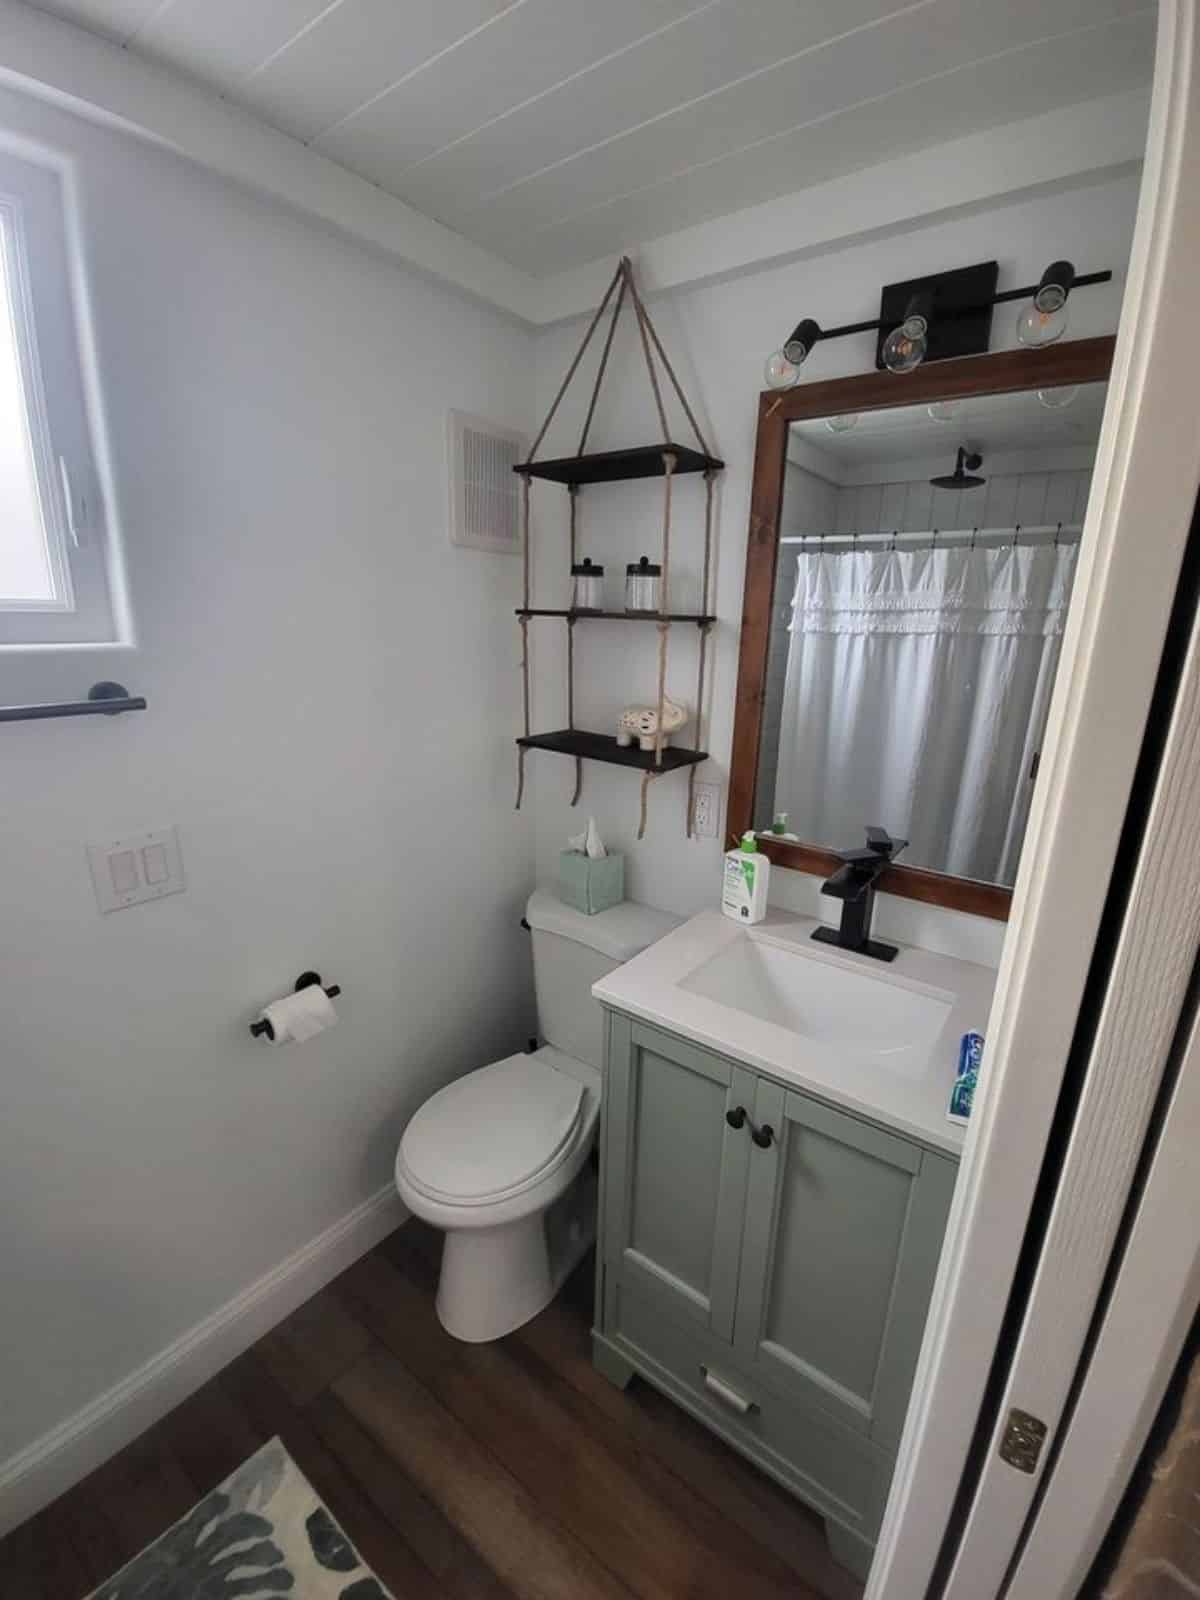 Standard toilet, sink with vanity & mirror in bathroom